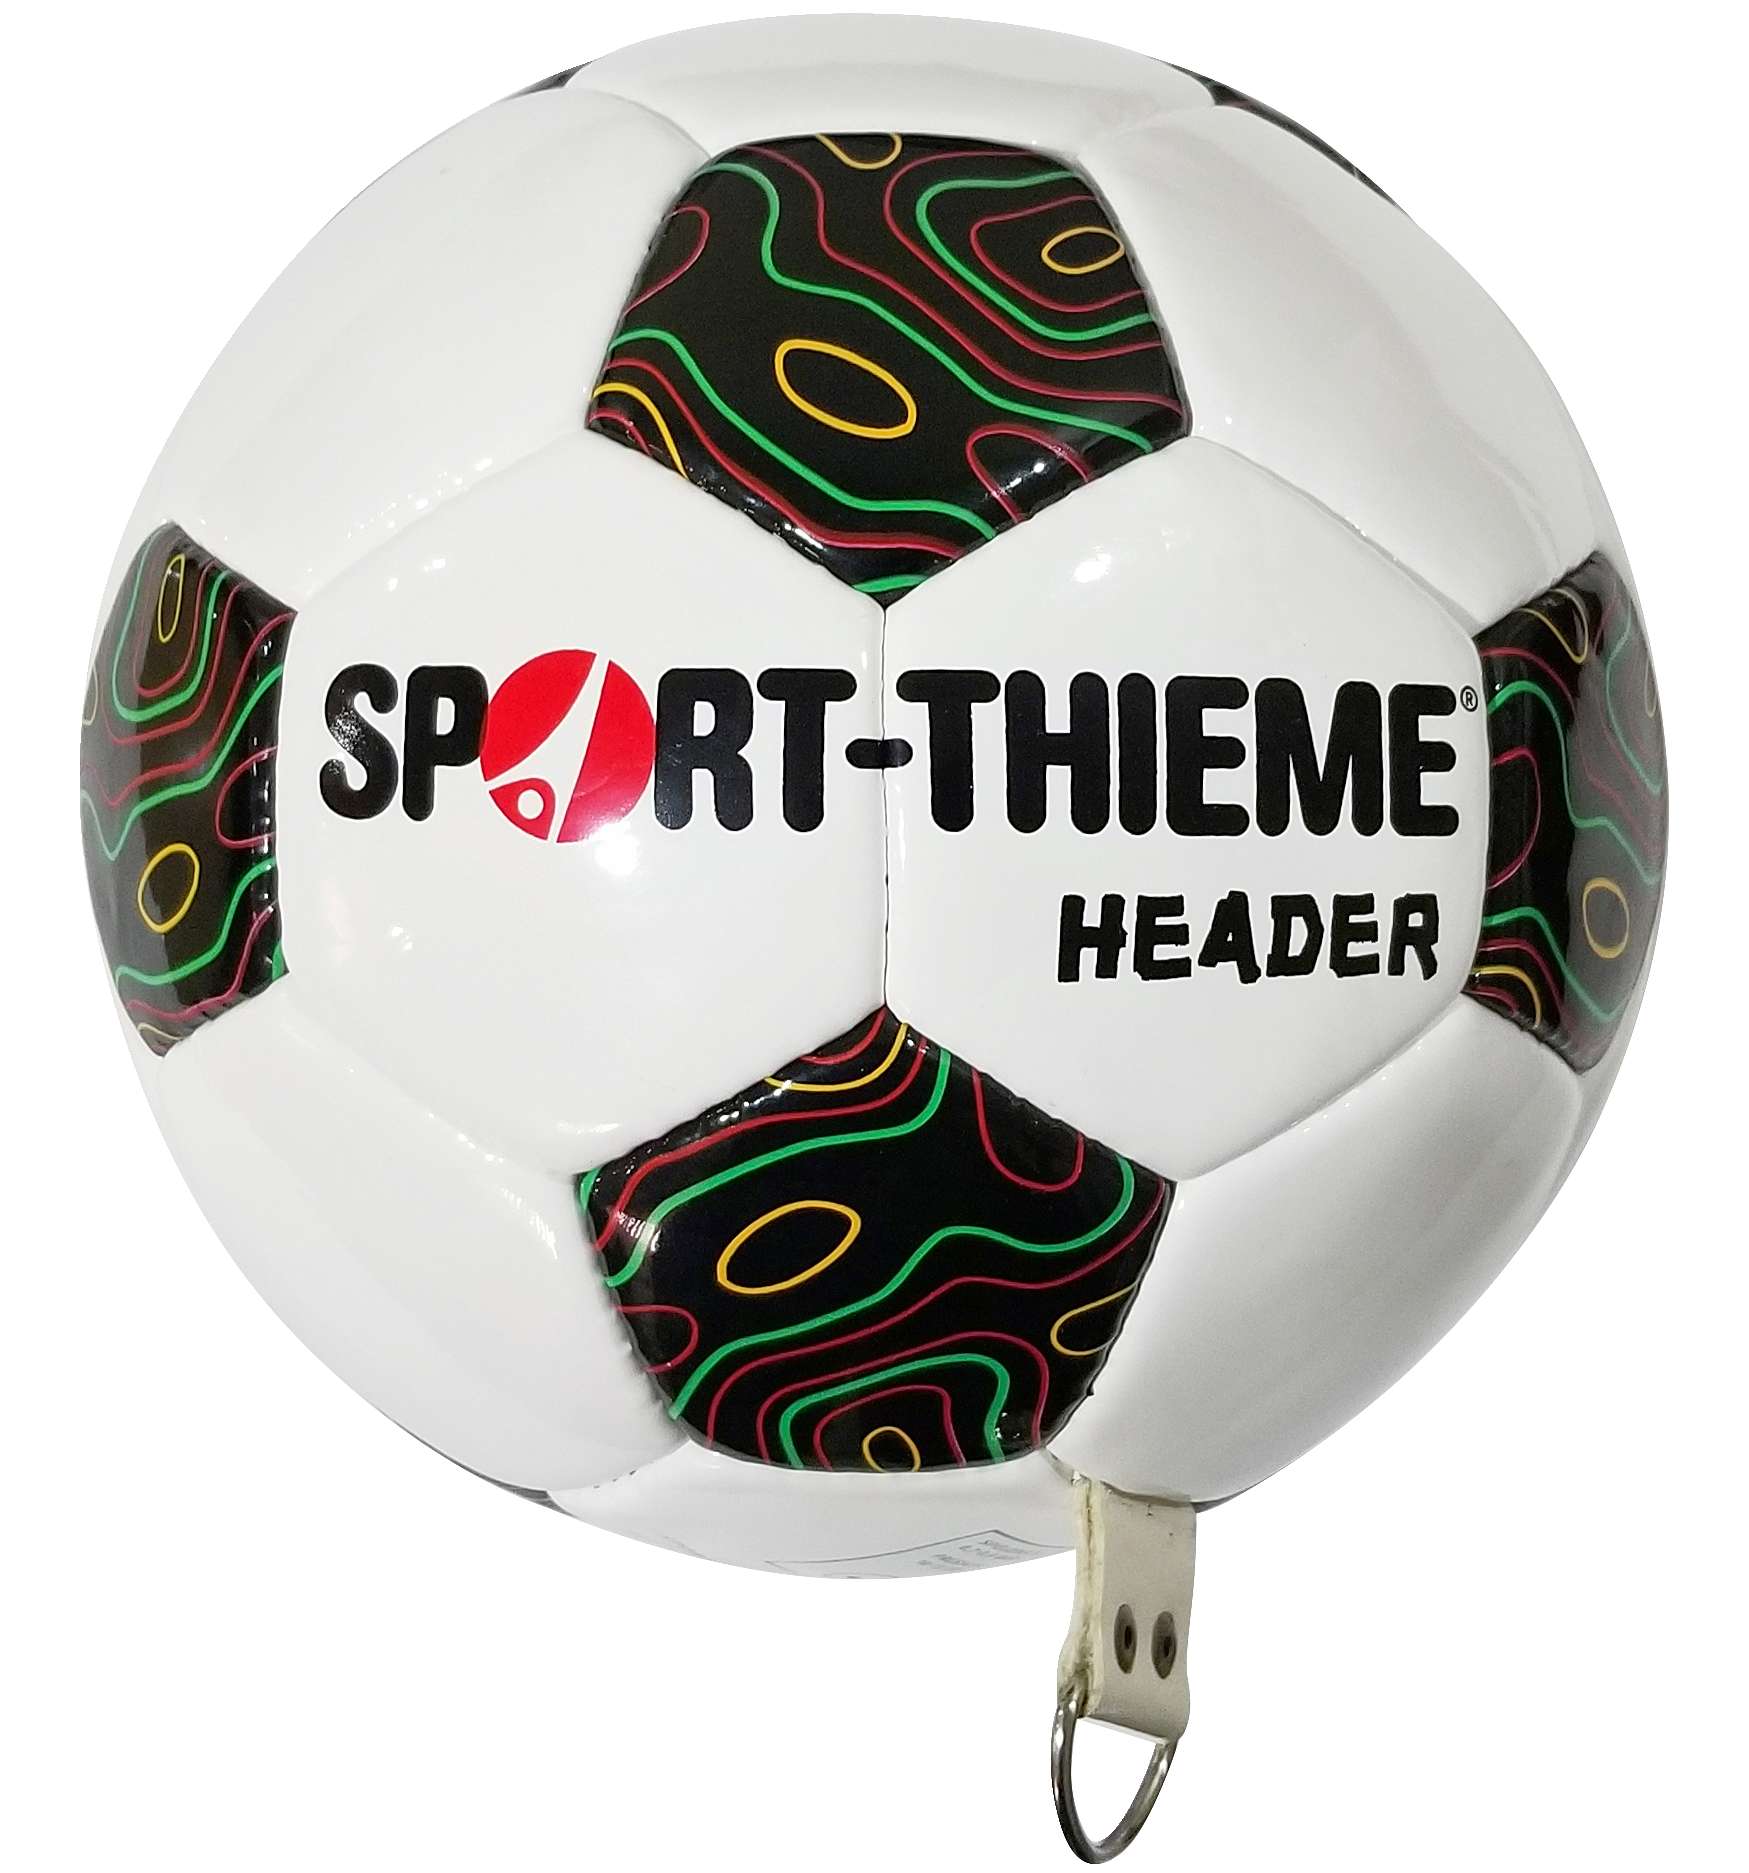 Sport-Thieme Kopfballtrainer "Header" von Sport-Thieme